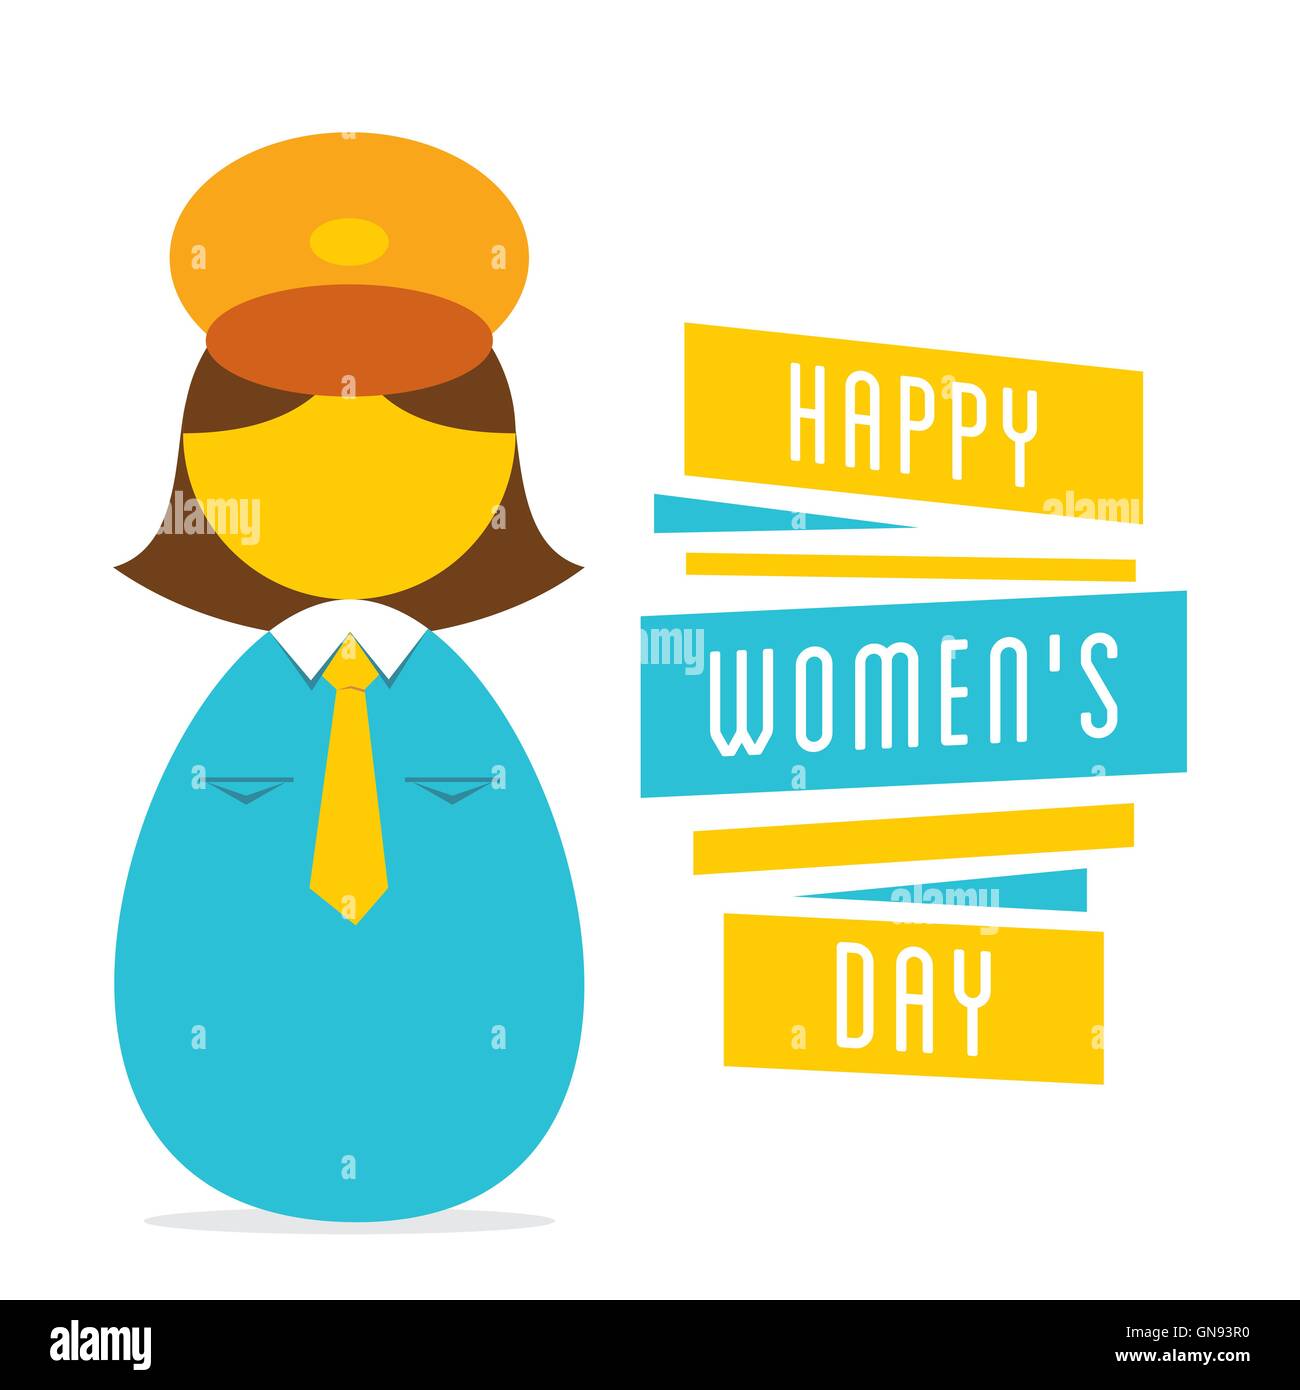 happy womens day, work in women police design Stock Vector